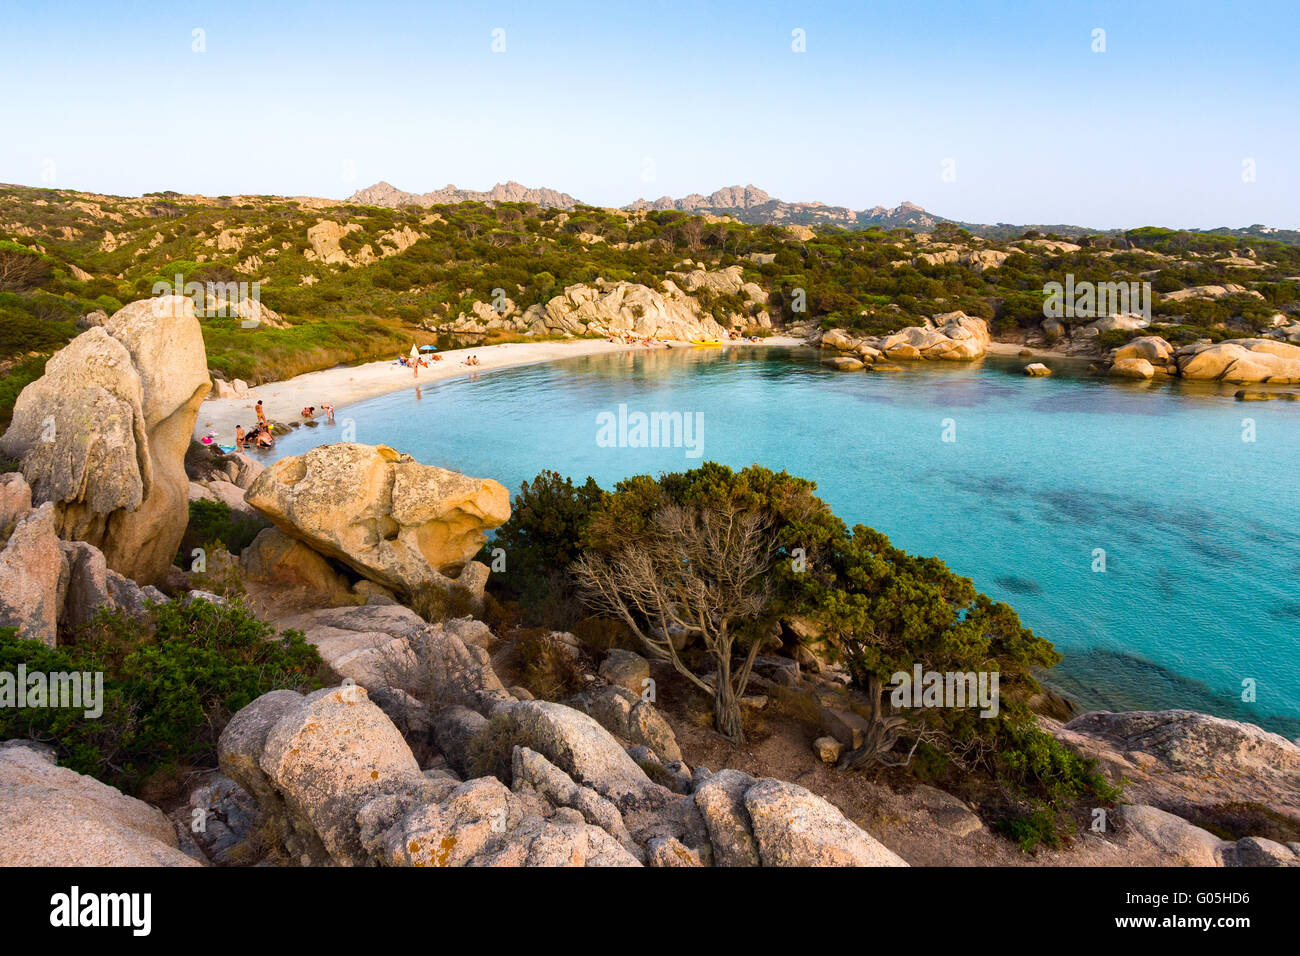 Caprera, cala serena, romantic, beach, isle, archipelago, la maddalena, island, national, marine, park, sardinia, italy, sea Stock Photo